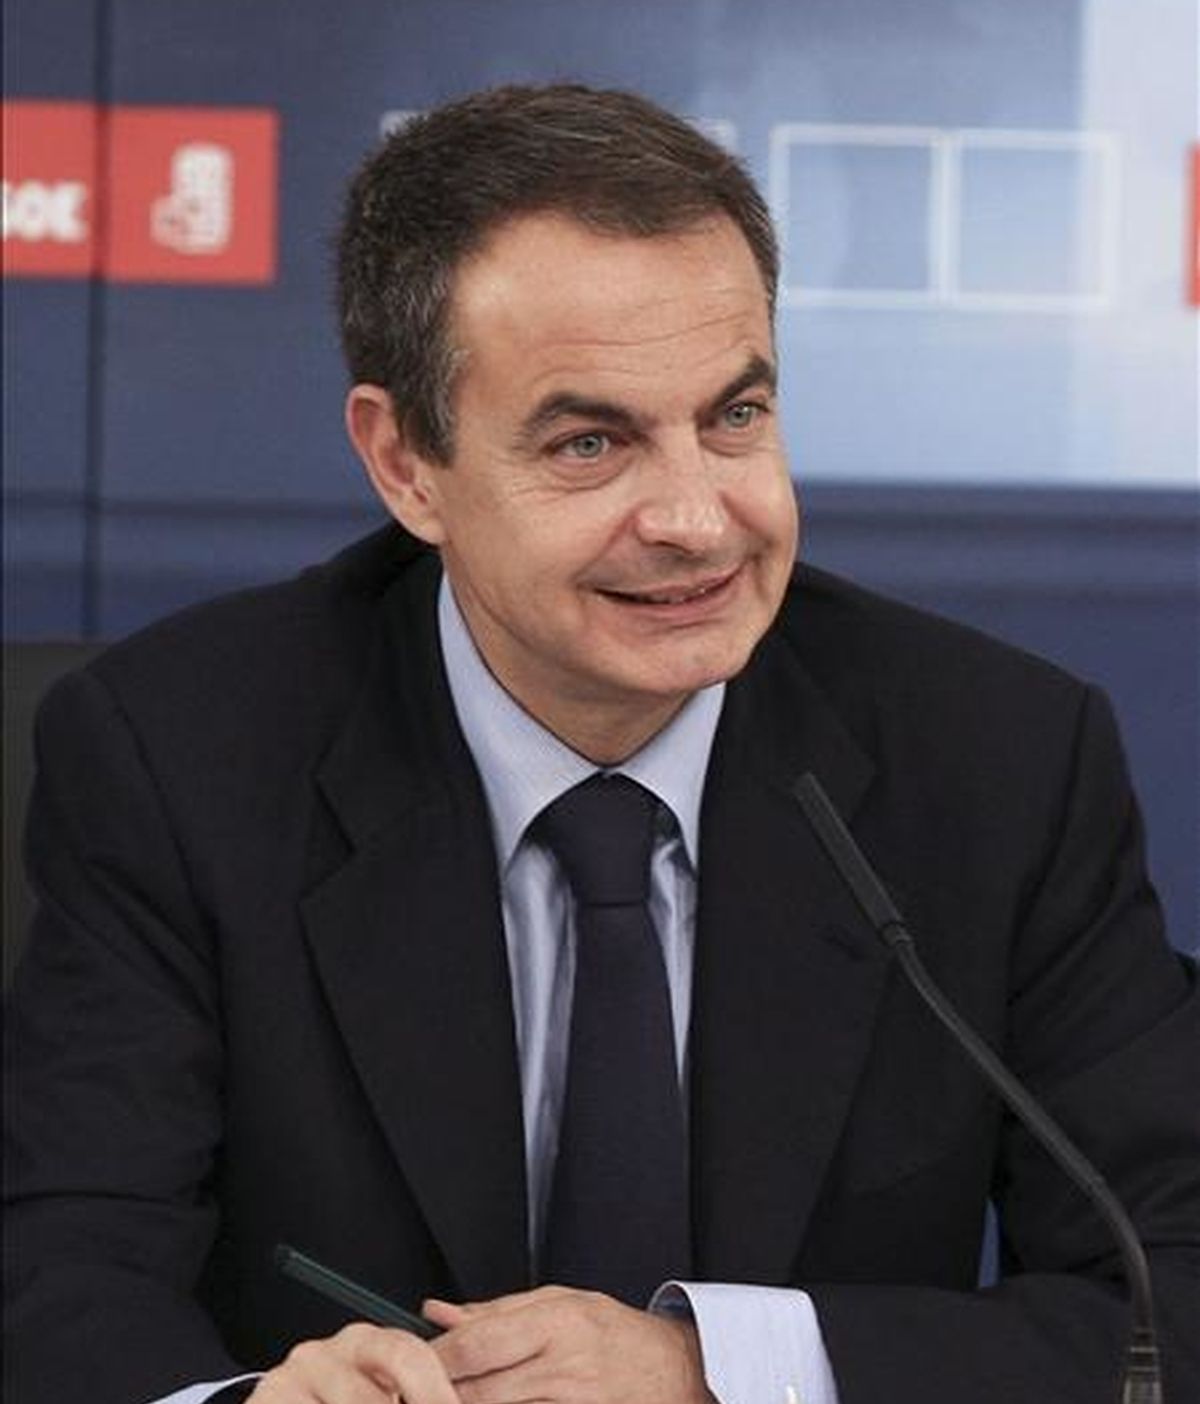 El jefe del Gobierno, José Luis Rodríguez Zapatero, al inicio del acto en el que se constituyó la delegación española en el grupo socialista europeo, que estará formada por los veintiún eurodiputados del PSOE elegidos el pasado domingo. EFE